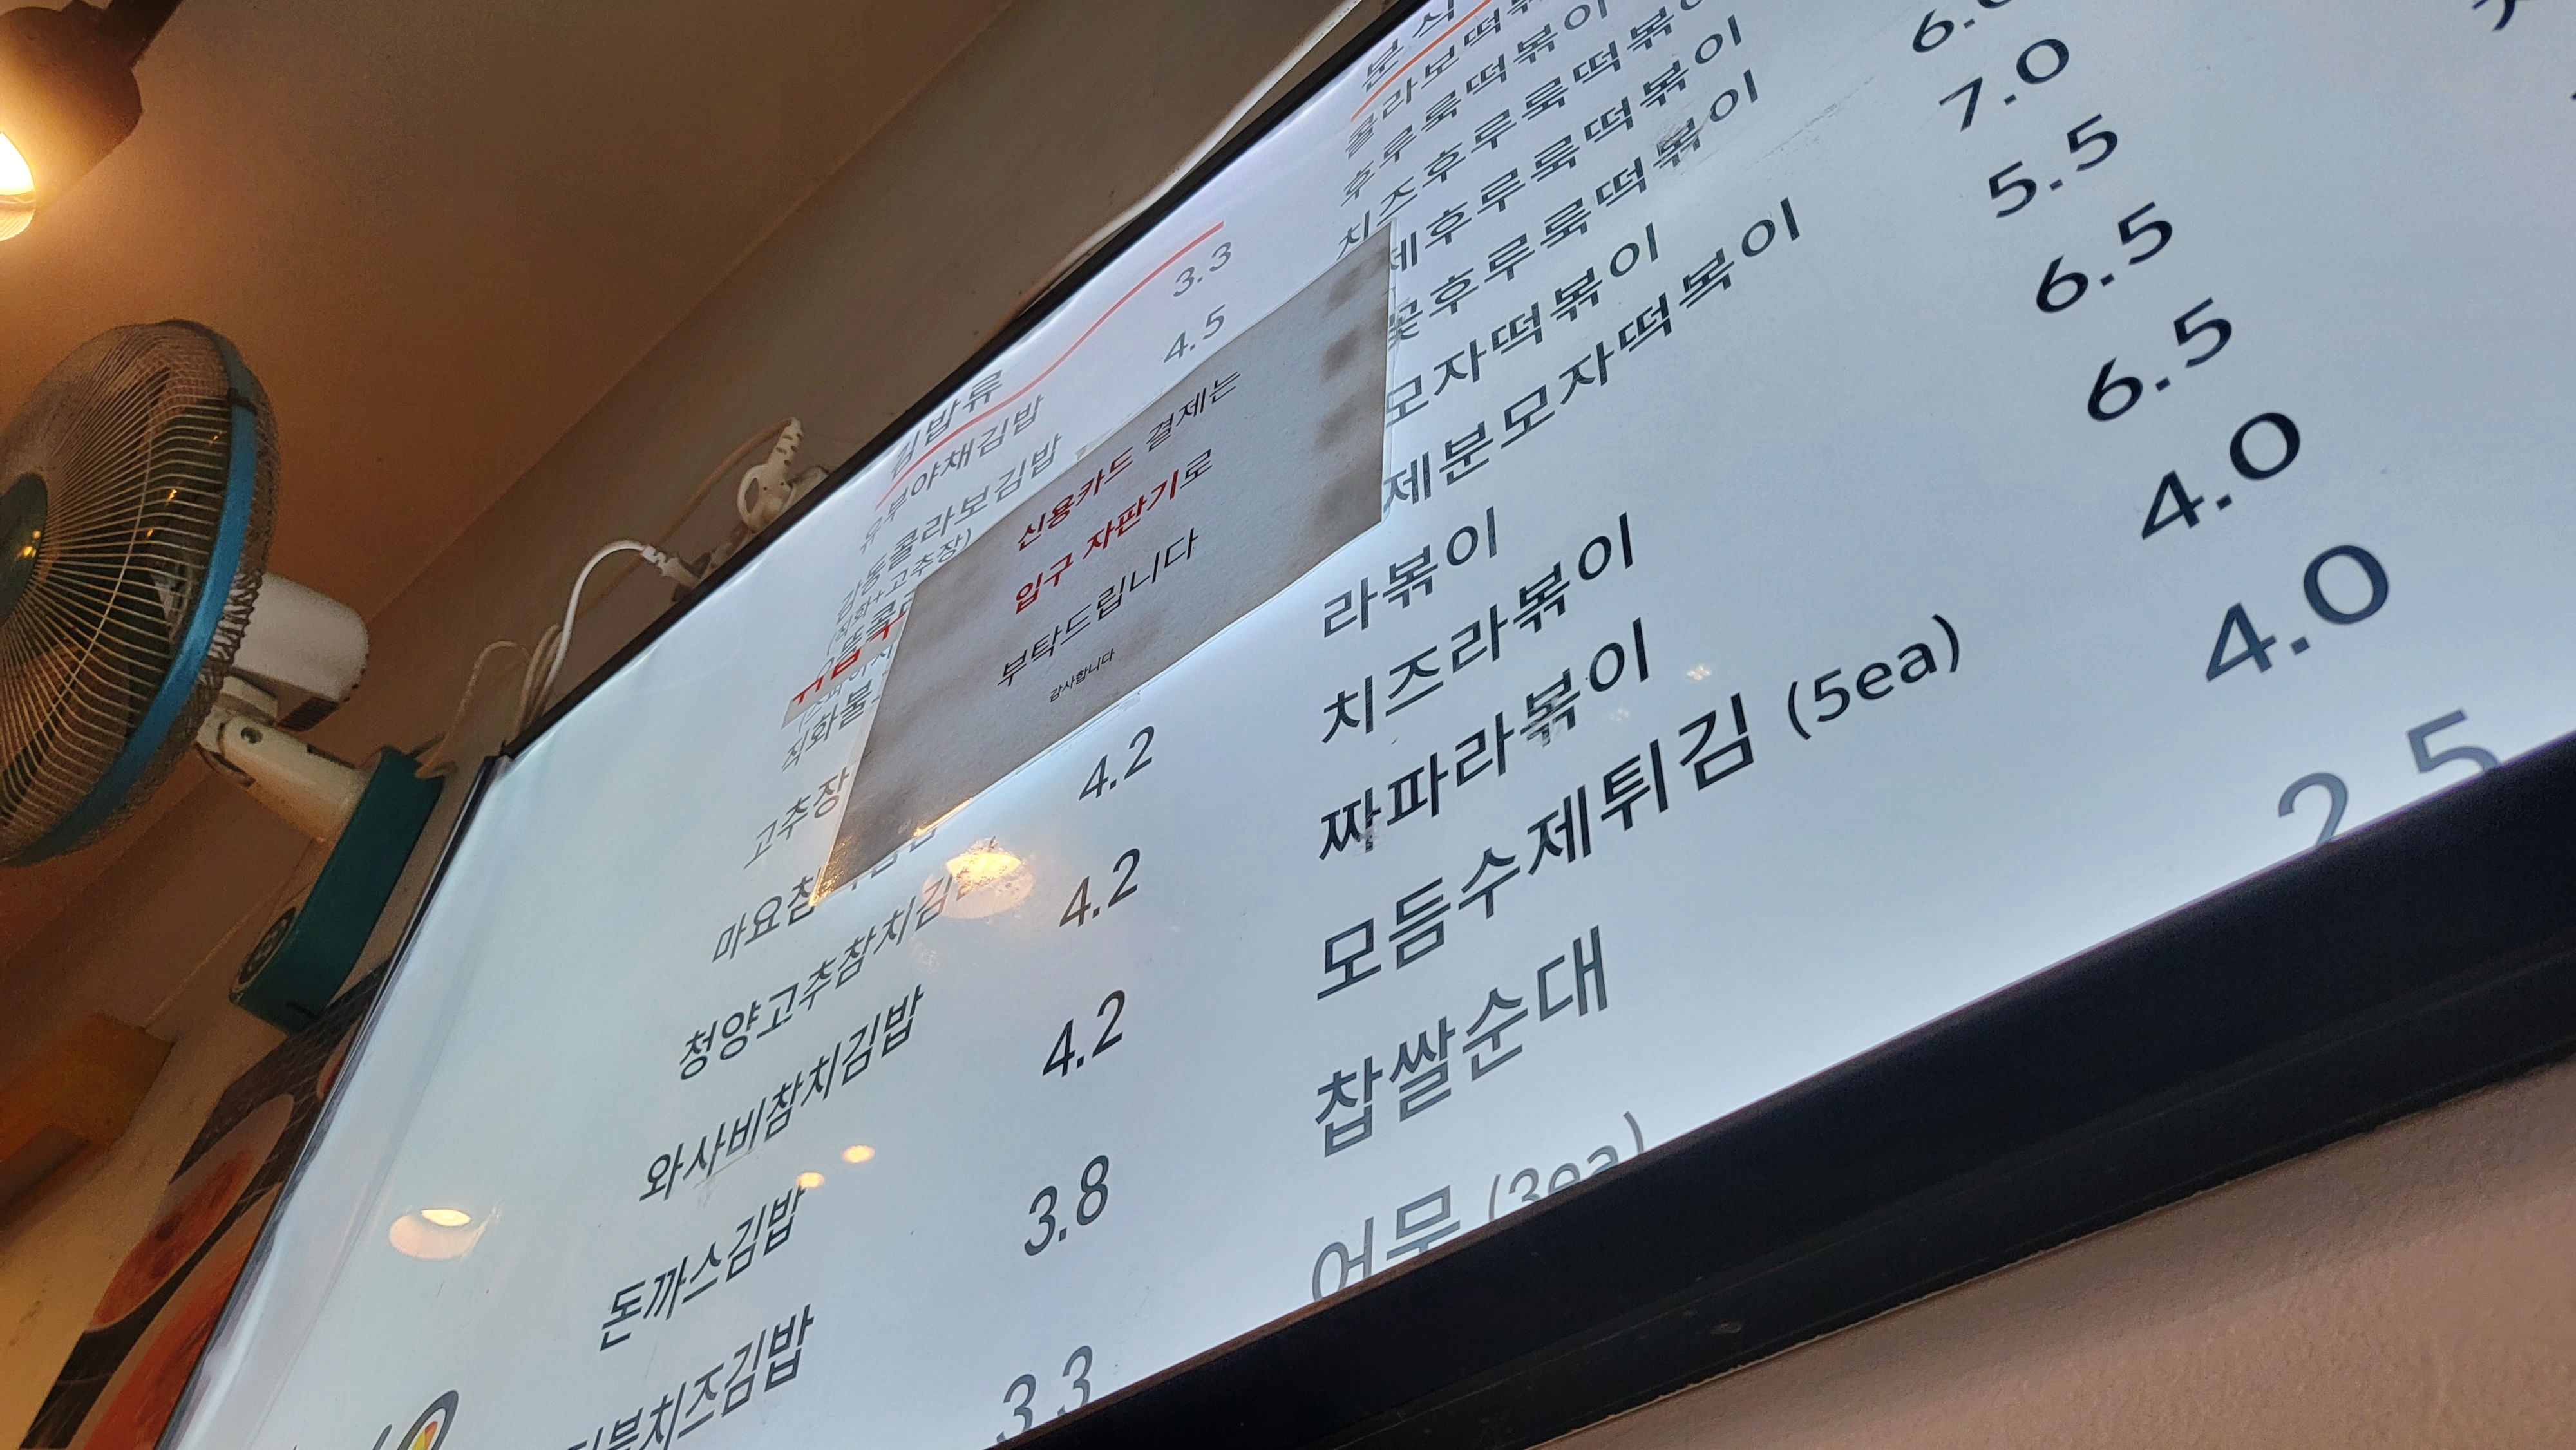 케이콜라보김밥 메뉴판